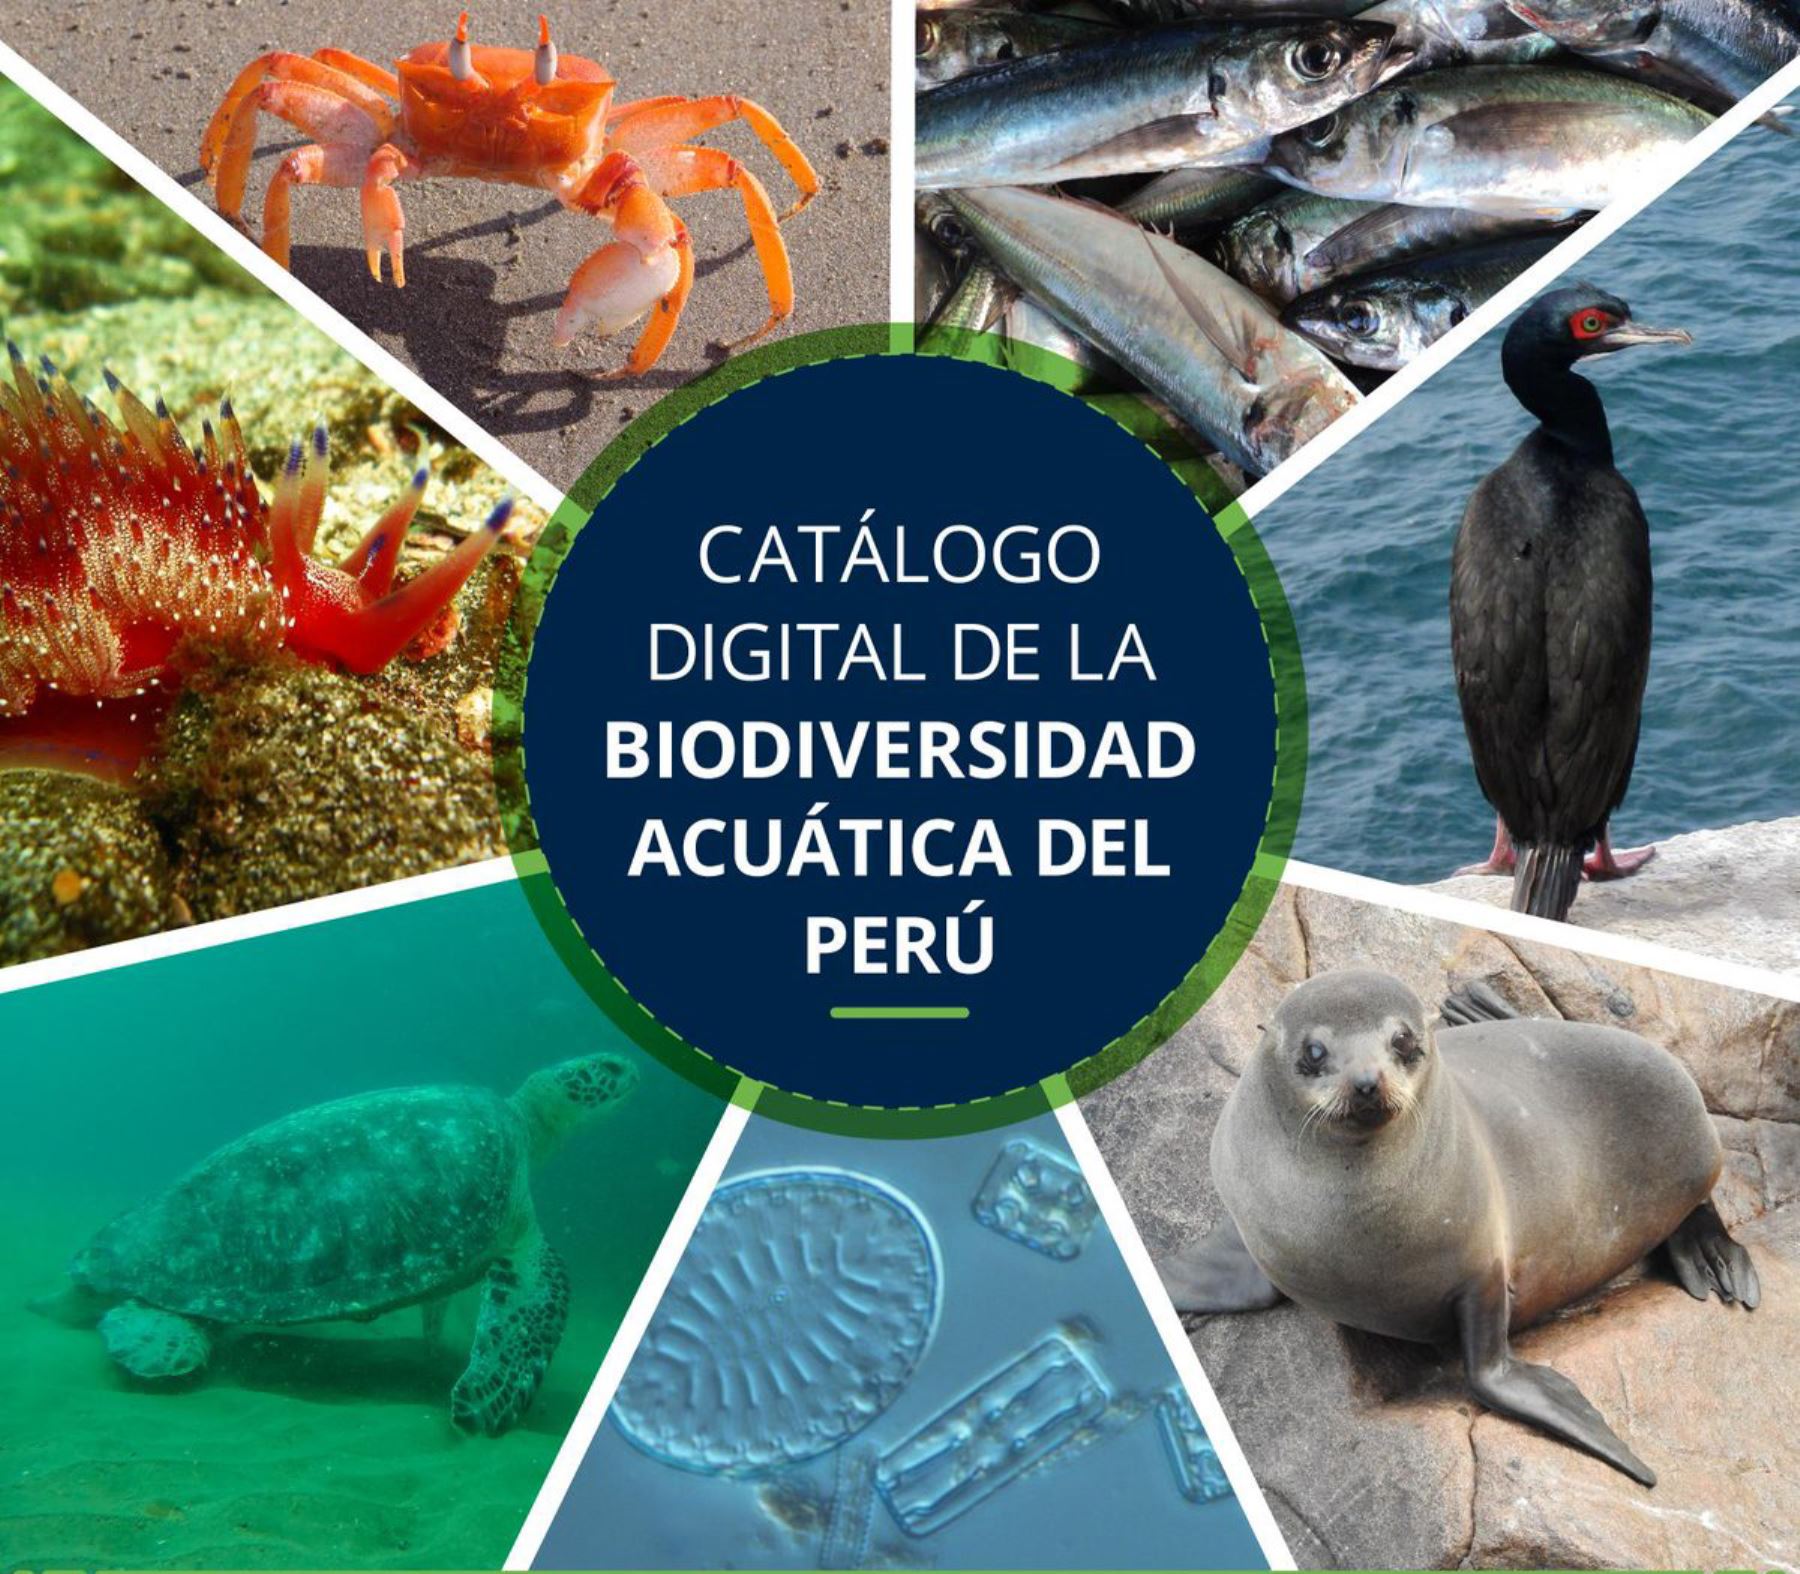 Catálogo Digital de la Biodiversidad Acuática peruana, elaborado por el Instituto del Mar del Perú (Imarpe).